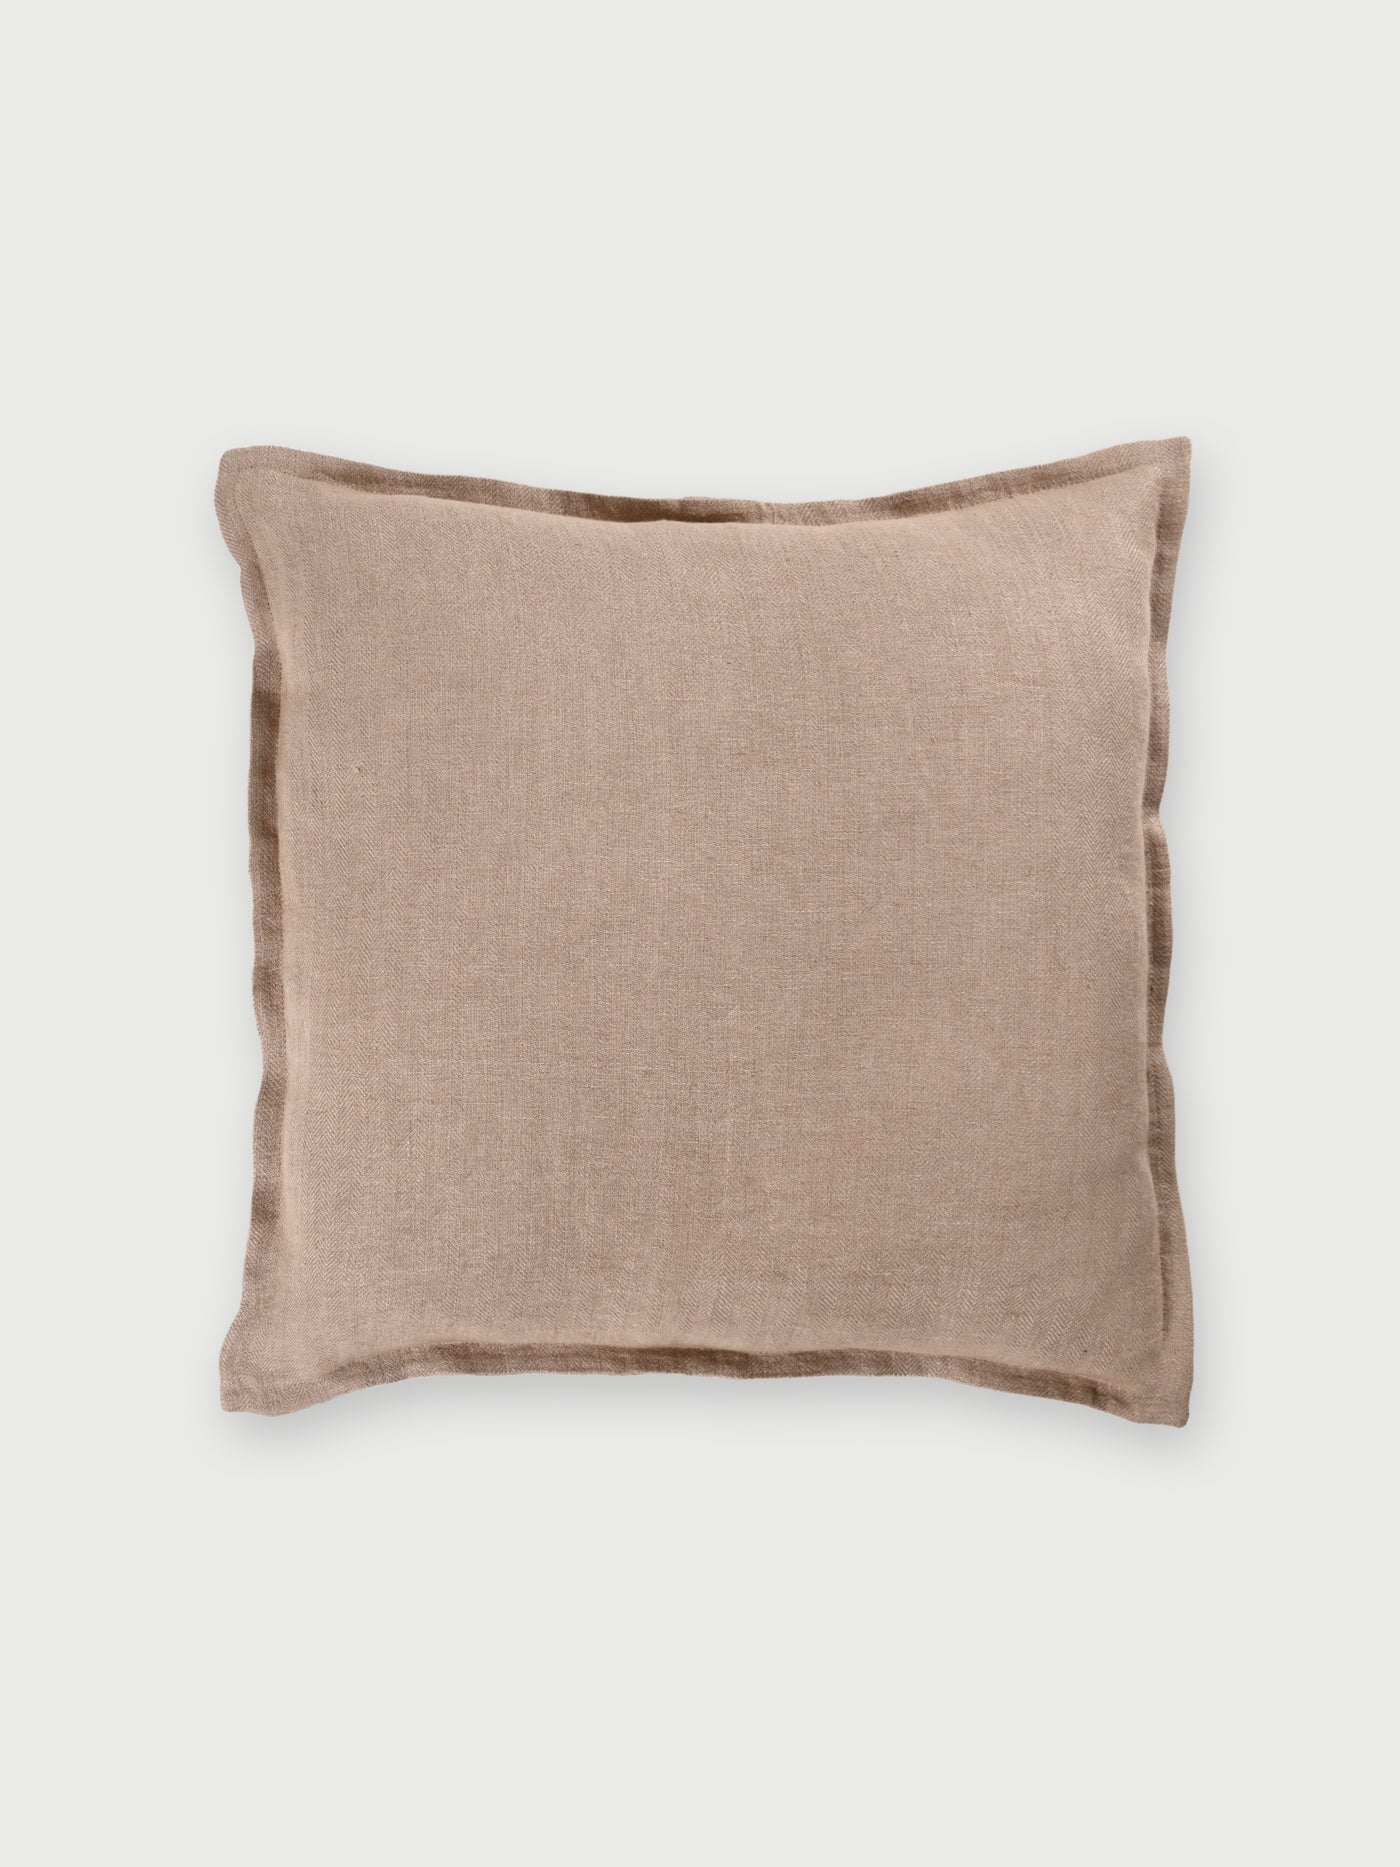 Herringbone Linen Cushion Cover